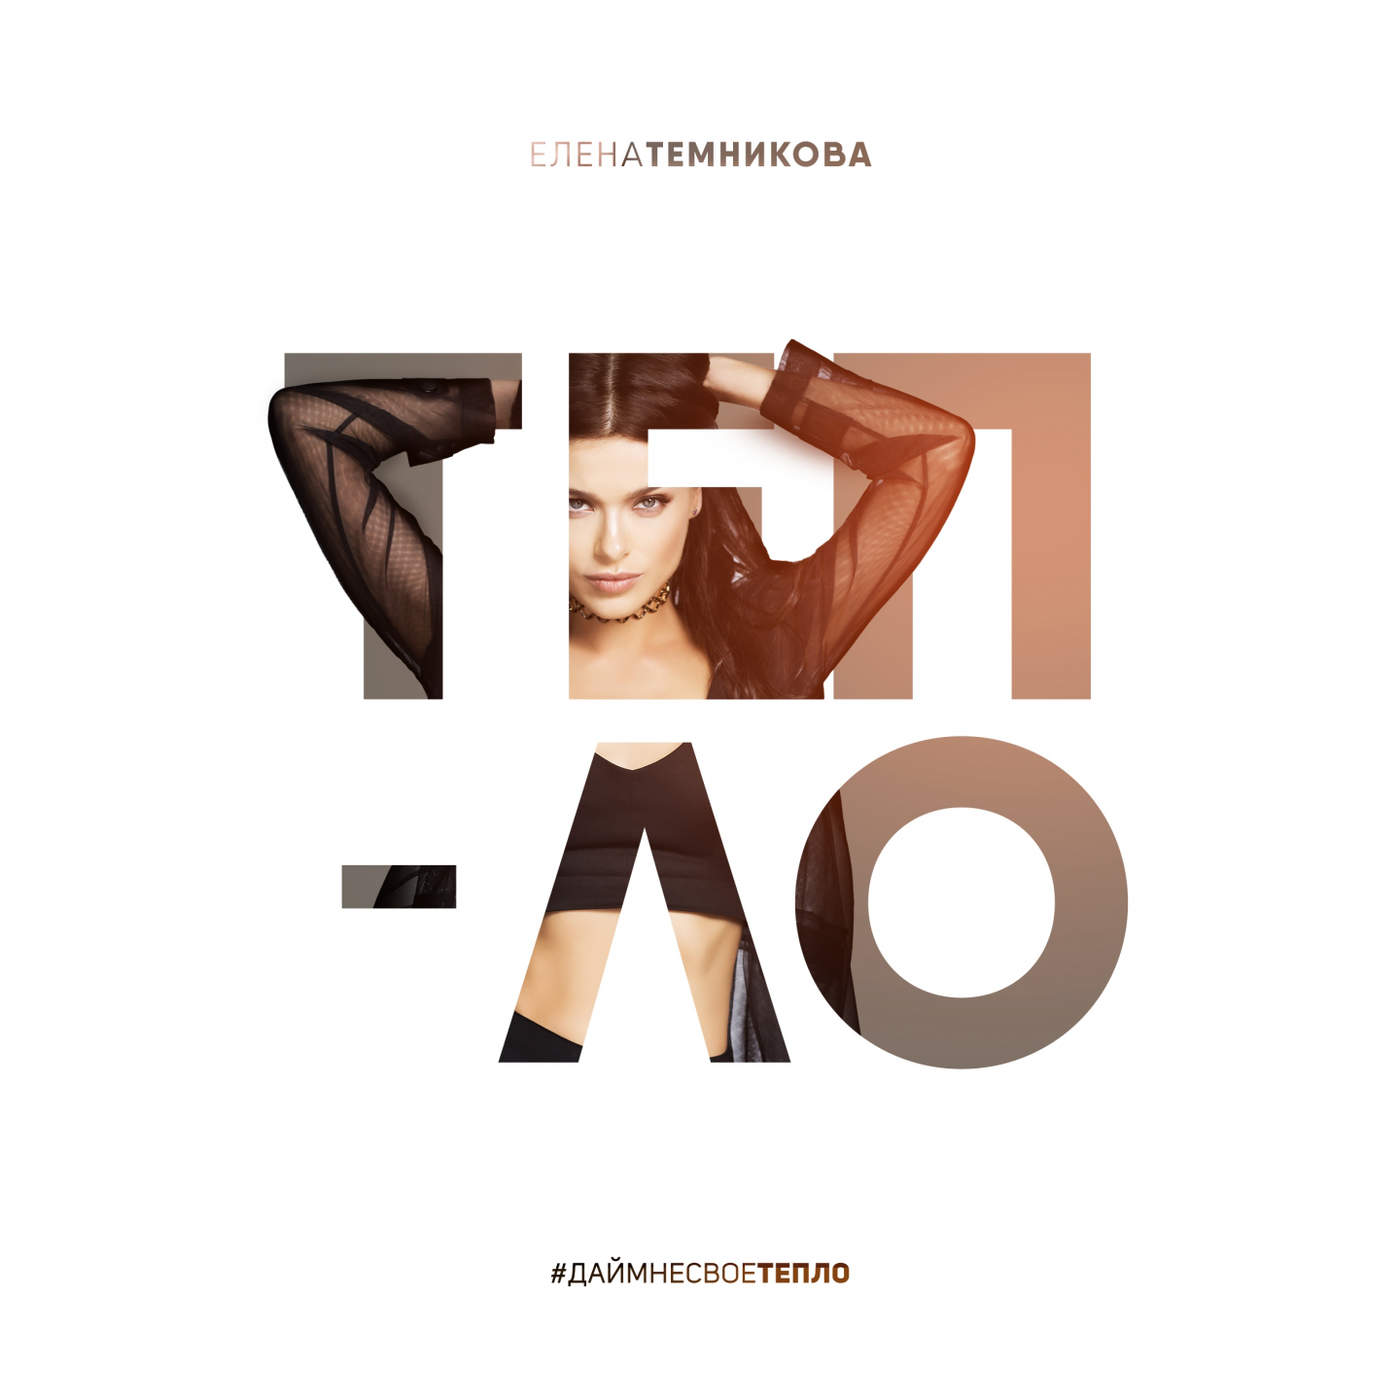 دانلود آهنگ جدید Elena Temnikova به نام Tenno